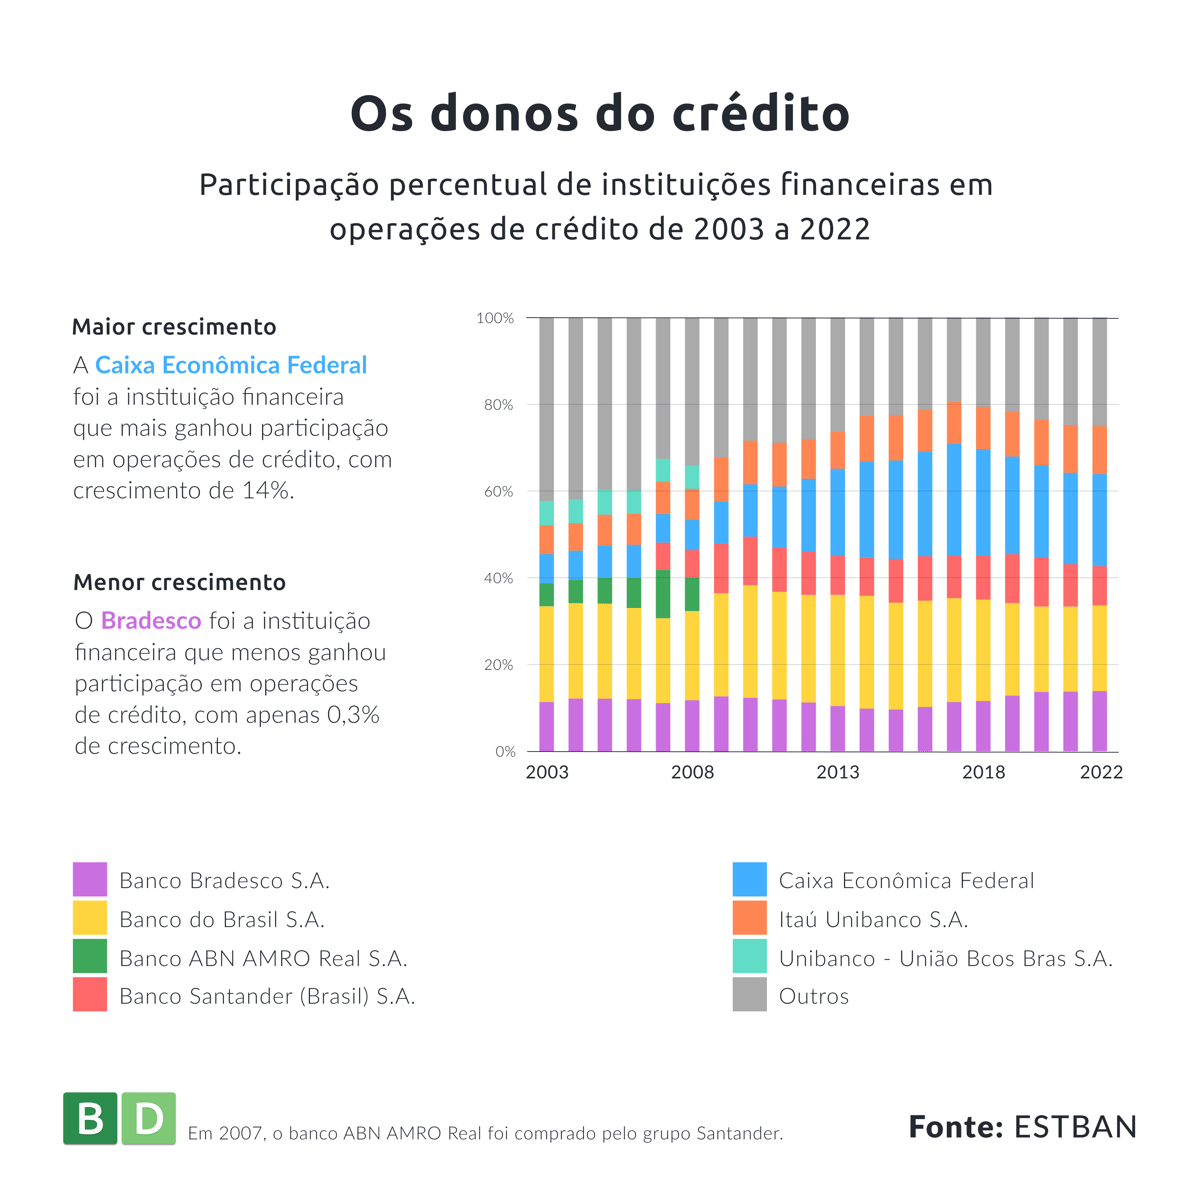 Os donos do Crédito: Participação percentual de instituições financeiras em operações de crédito de 20223 a 2022